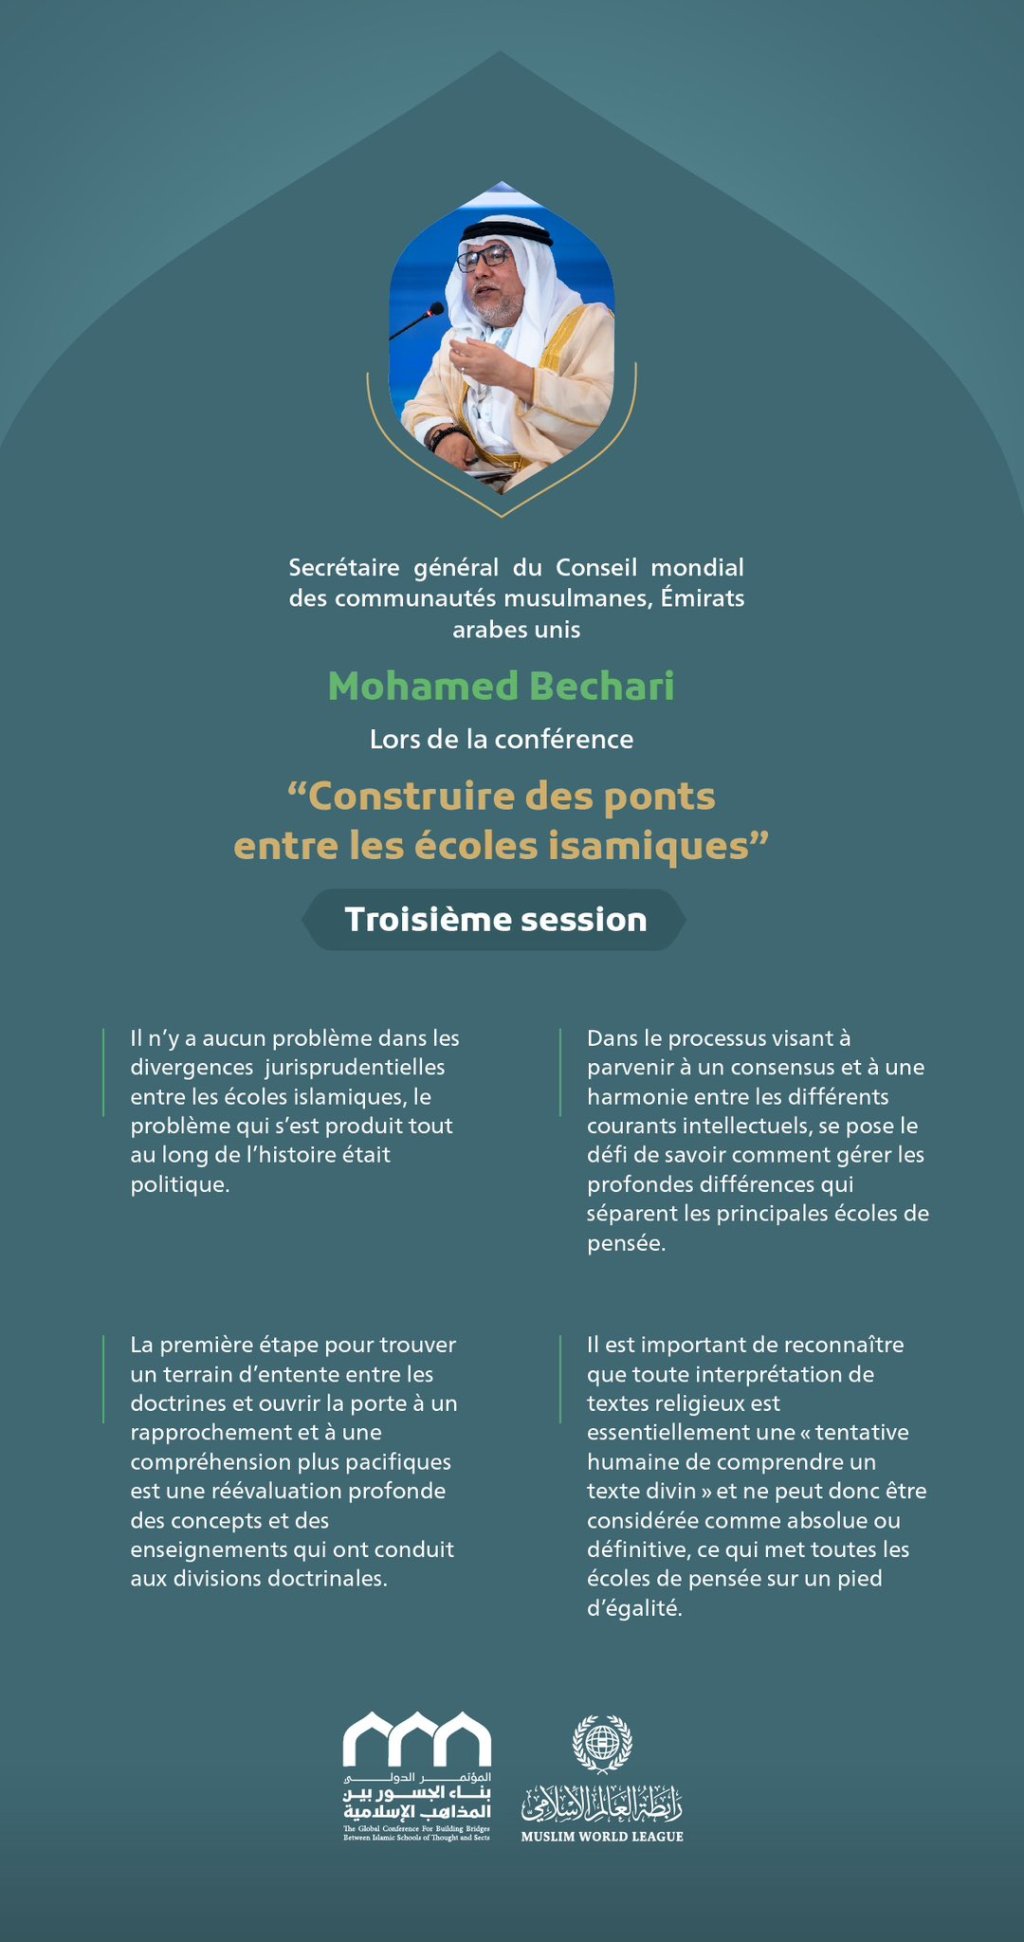 « Rapprochement et compréhension » Extraits du discours du Secrétaire général du Conseil mondial des communautés musulmanes, Émirats arabes unis Mohamed Bechari lors de la conférence internationale « Construire des ponts entre les écoles islamiques » :